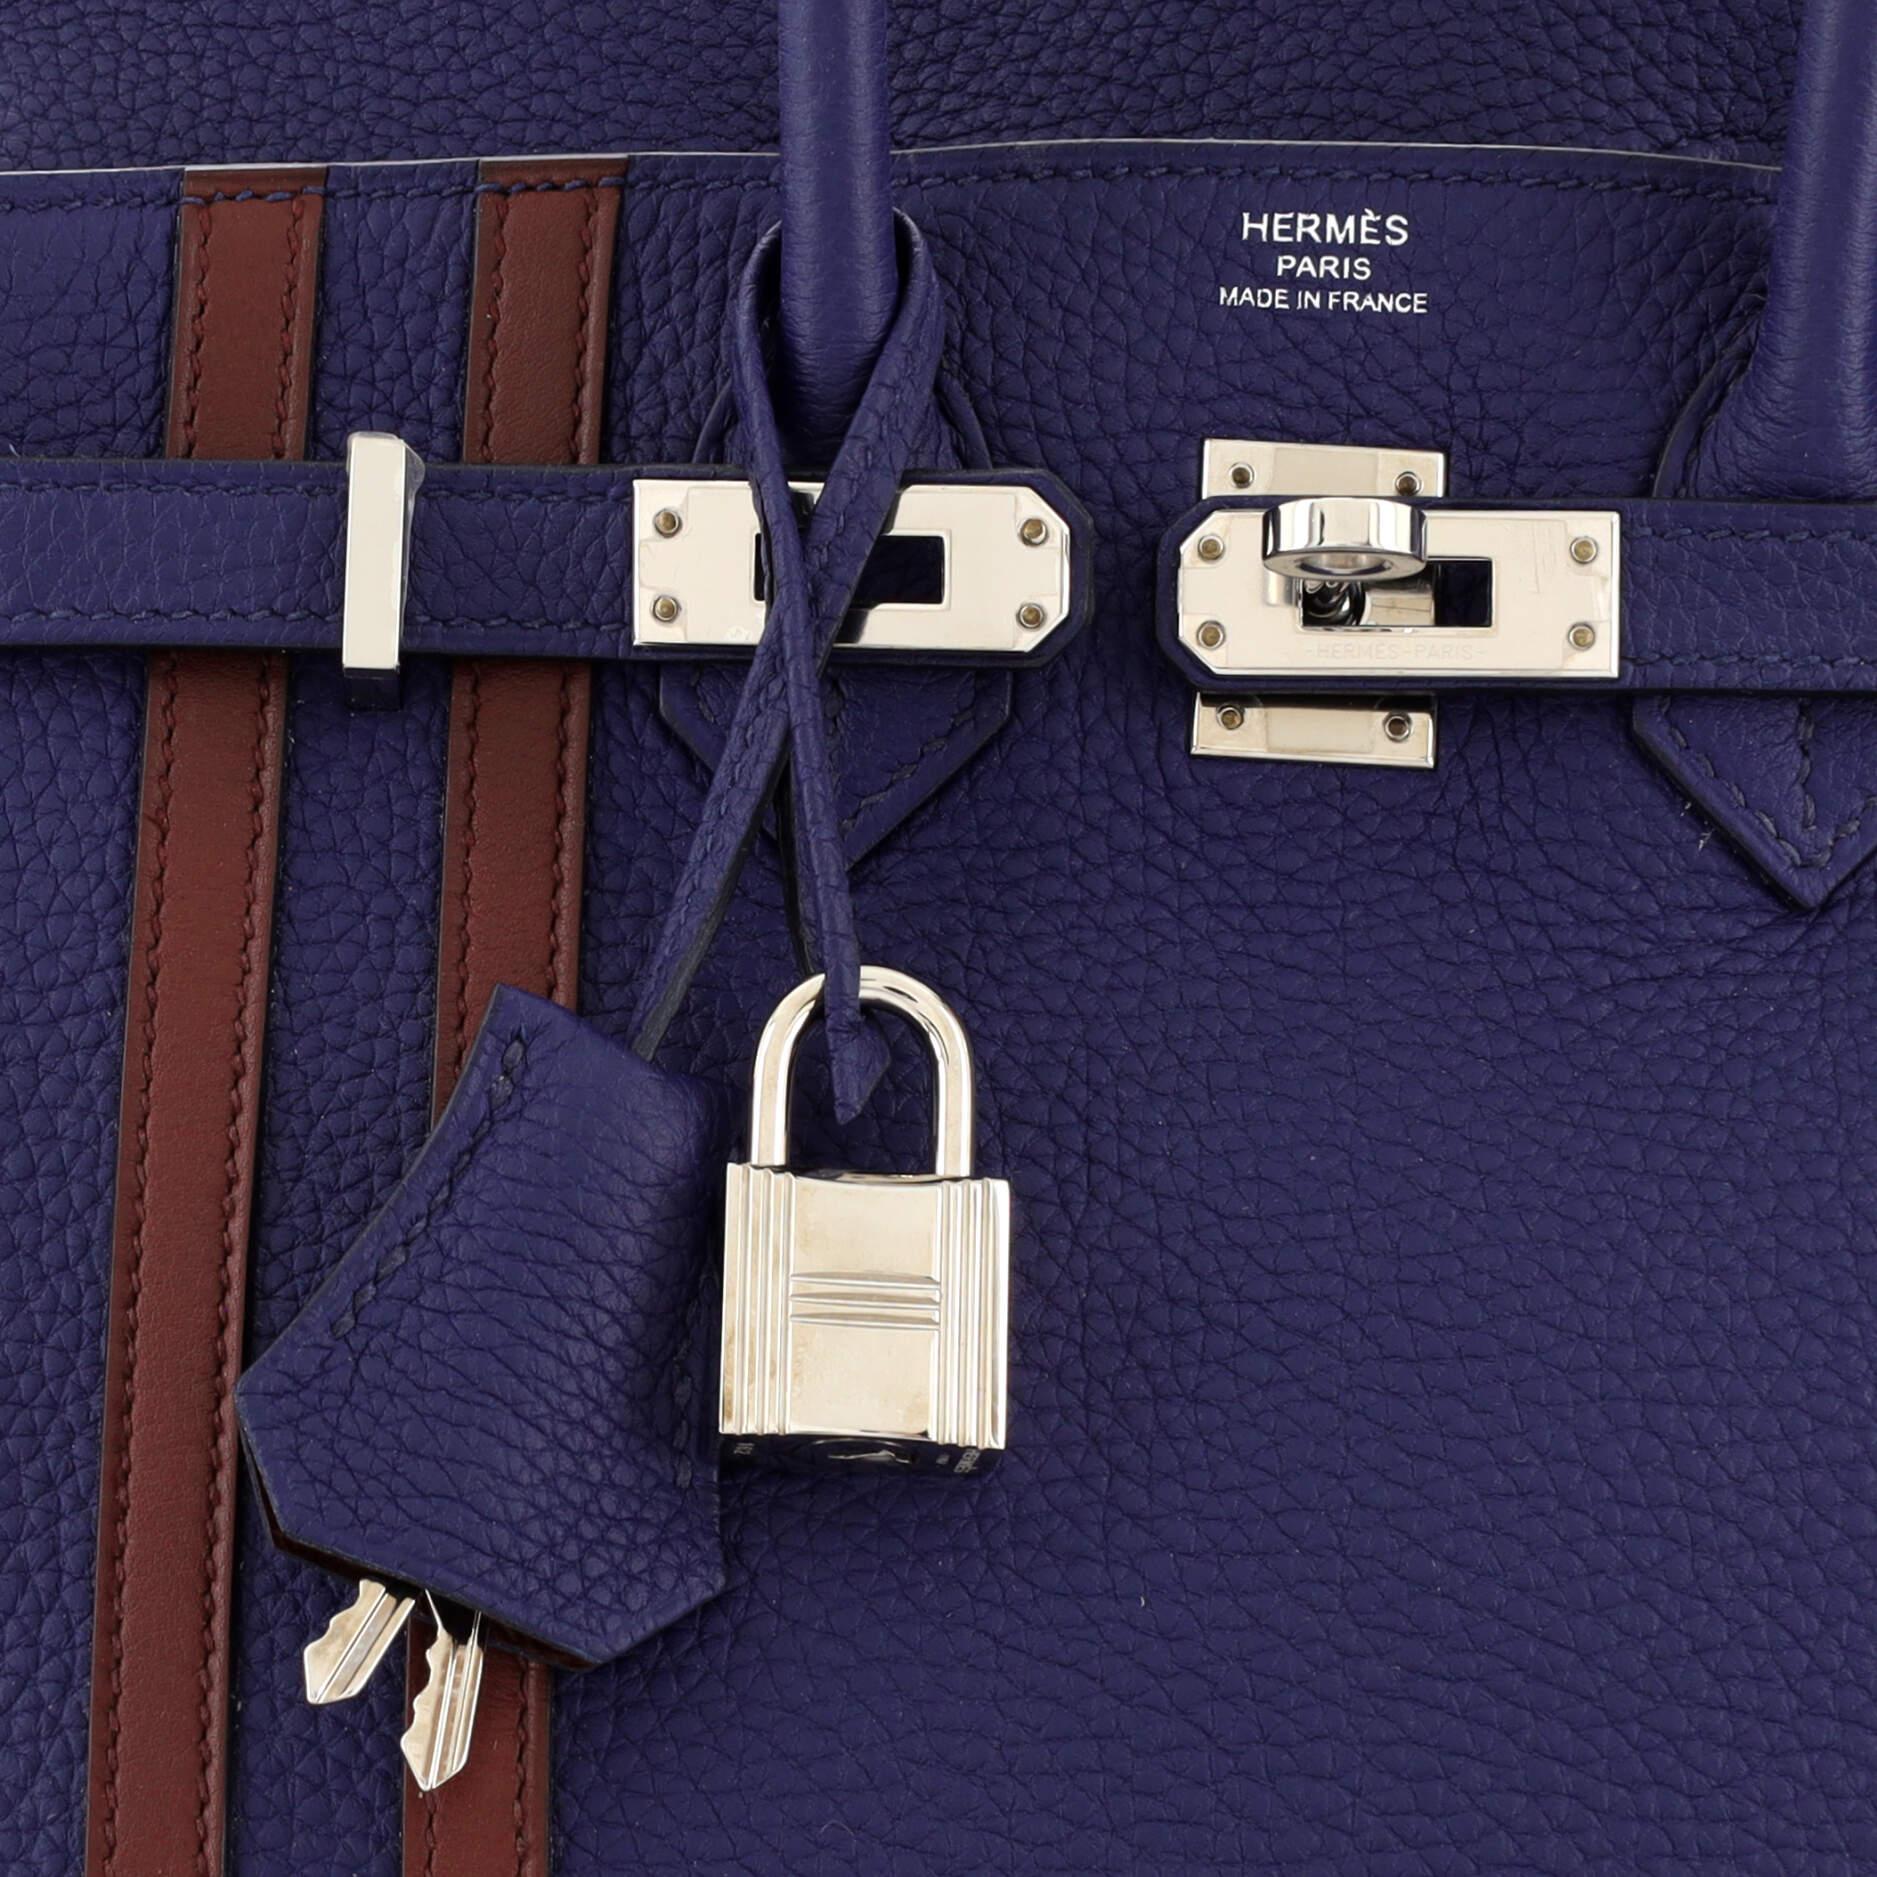 Hermes Officier Birkin Bag Limited Edition Togo with Swift 25 3